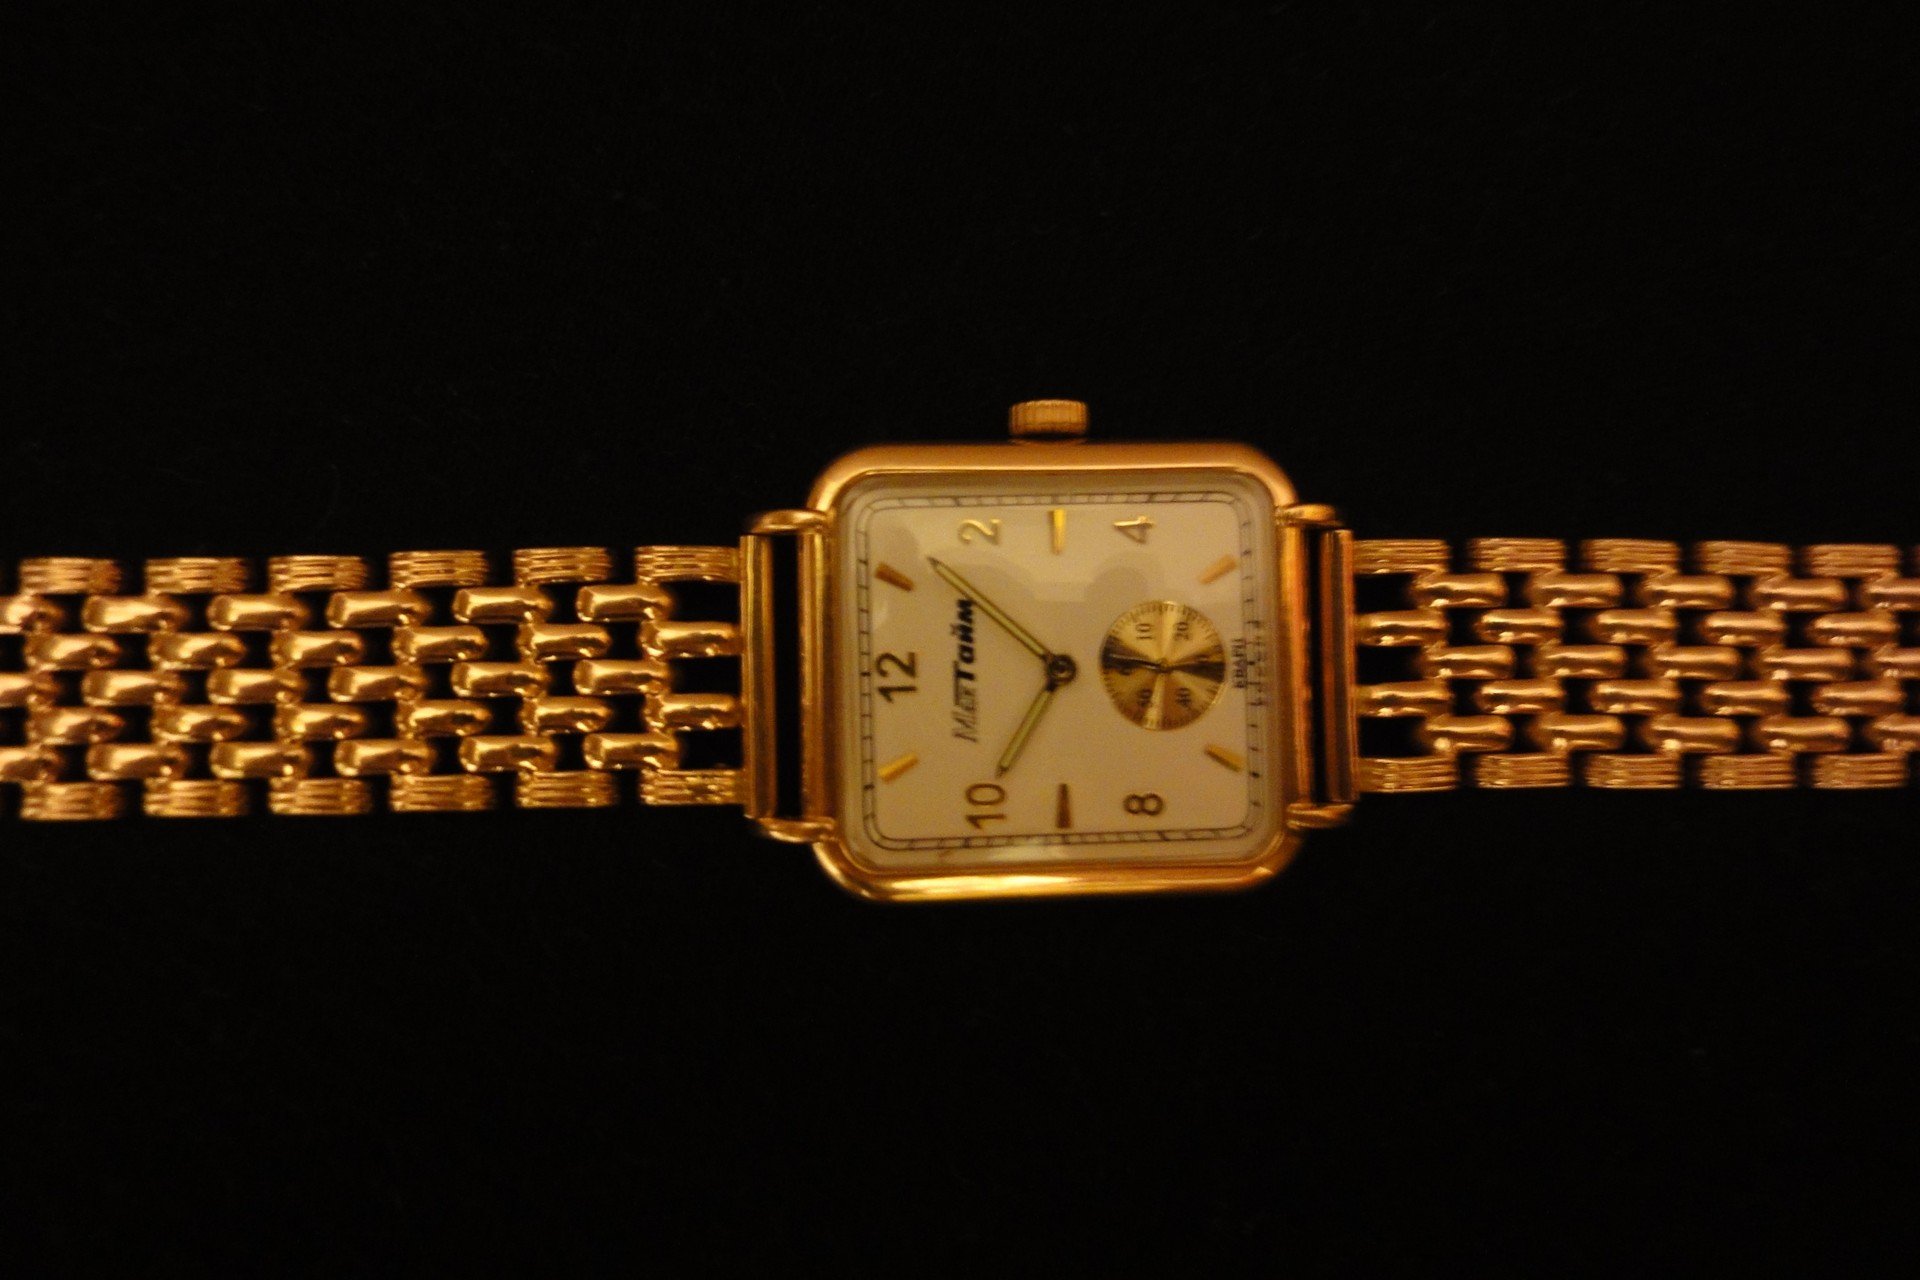 Цена часов мактайм золотые. Часы "МАКТАЙМ" 585 пробы. Золотые часы МАКТАЙМ 585 пробы. Золотые часы МАКТАЙМ С золотым браслетом мужские. МАКТАЙМ кварц золотые часы.